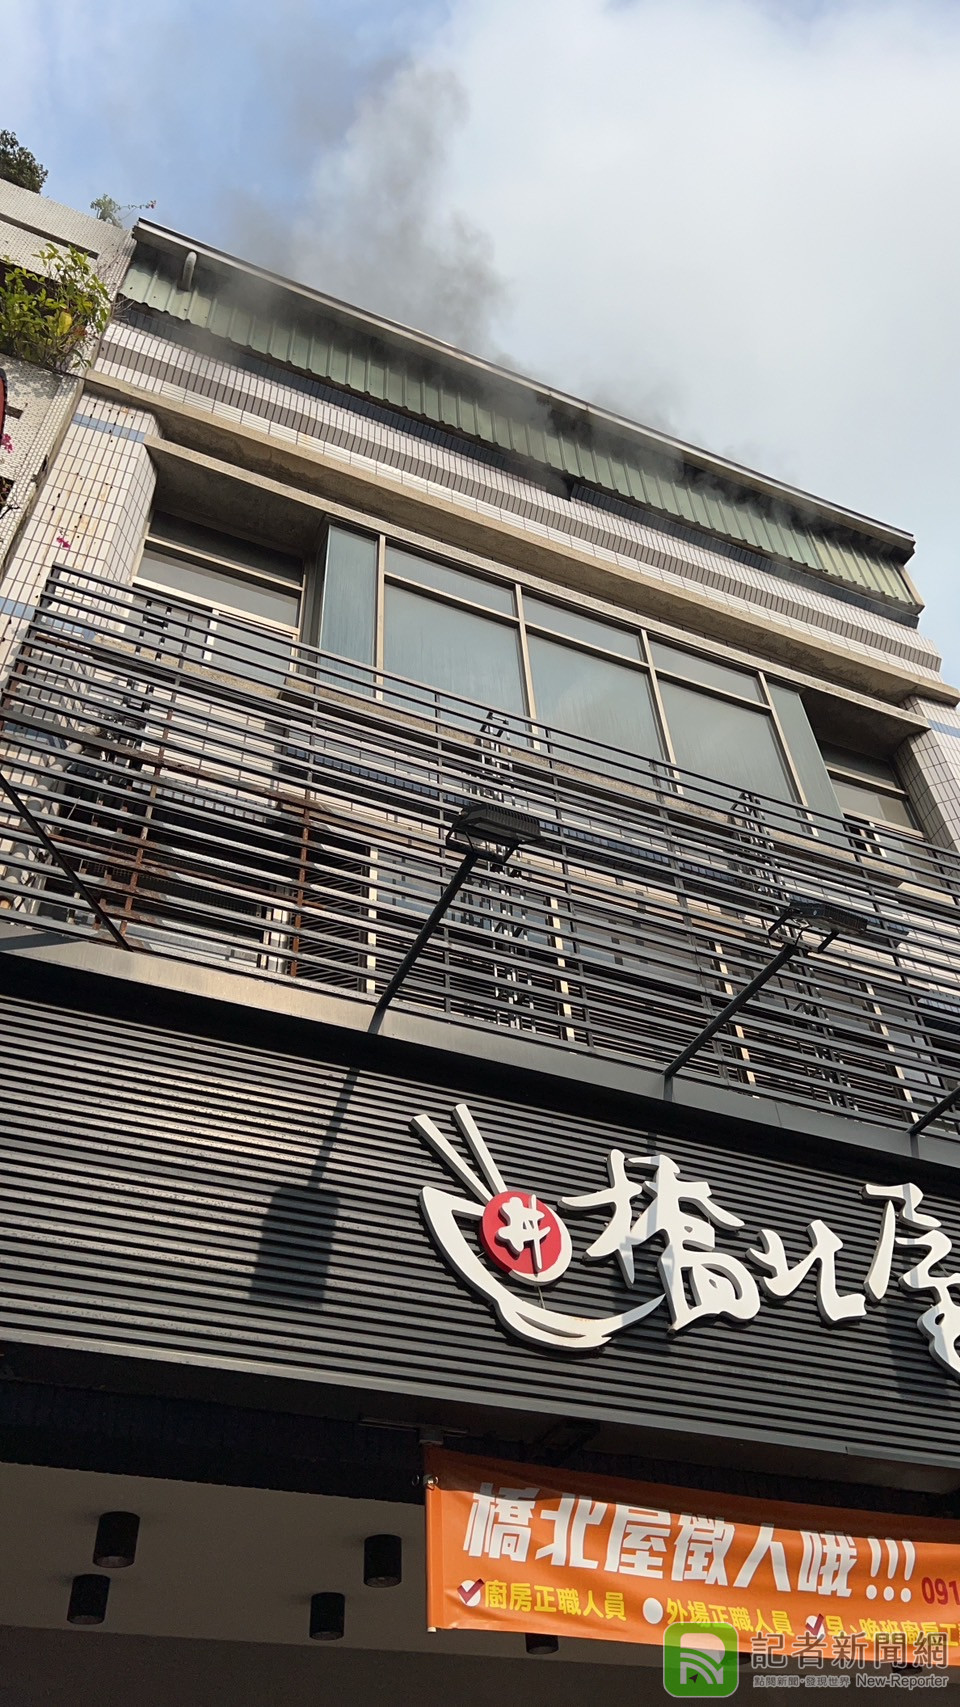 （更新畫面）台南忠義路日式料理店鍋爐爆炸 2員工跳2樓逃生